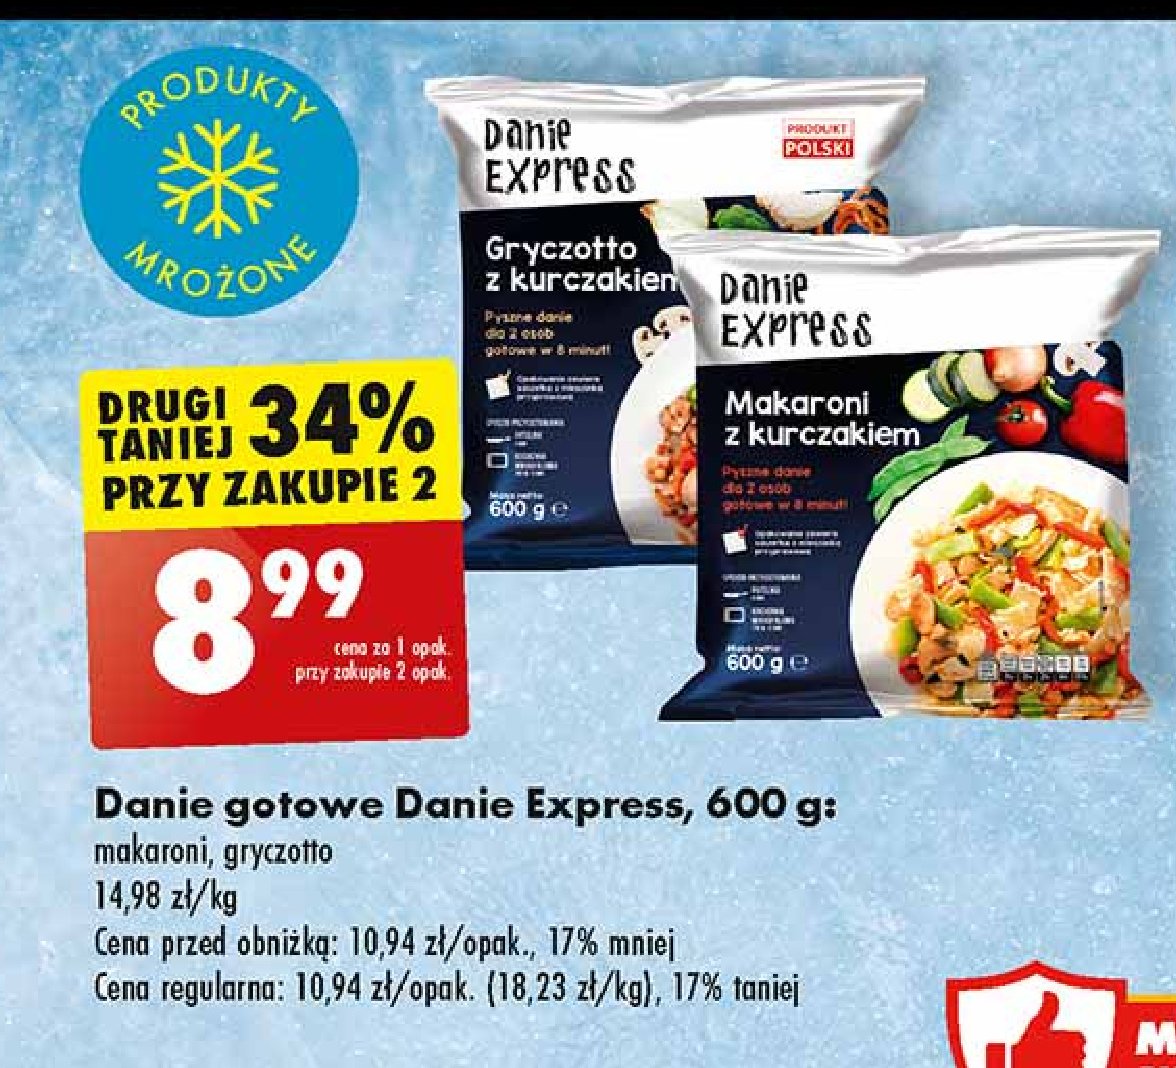 Makaroni z kurczakiem Danie express promocja